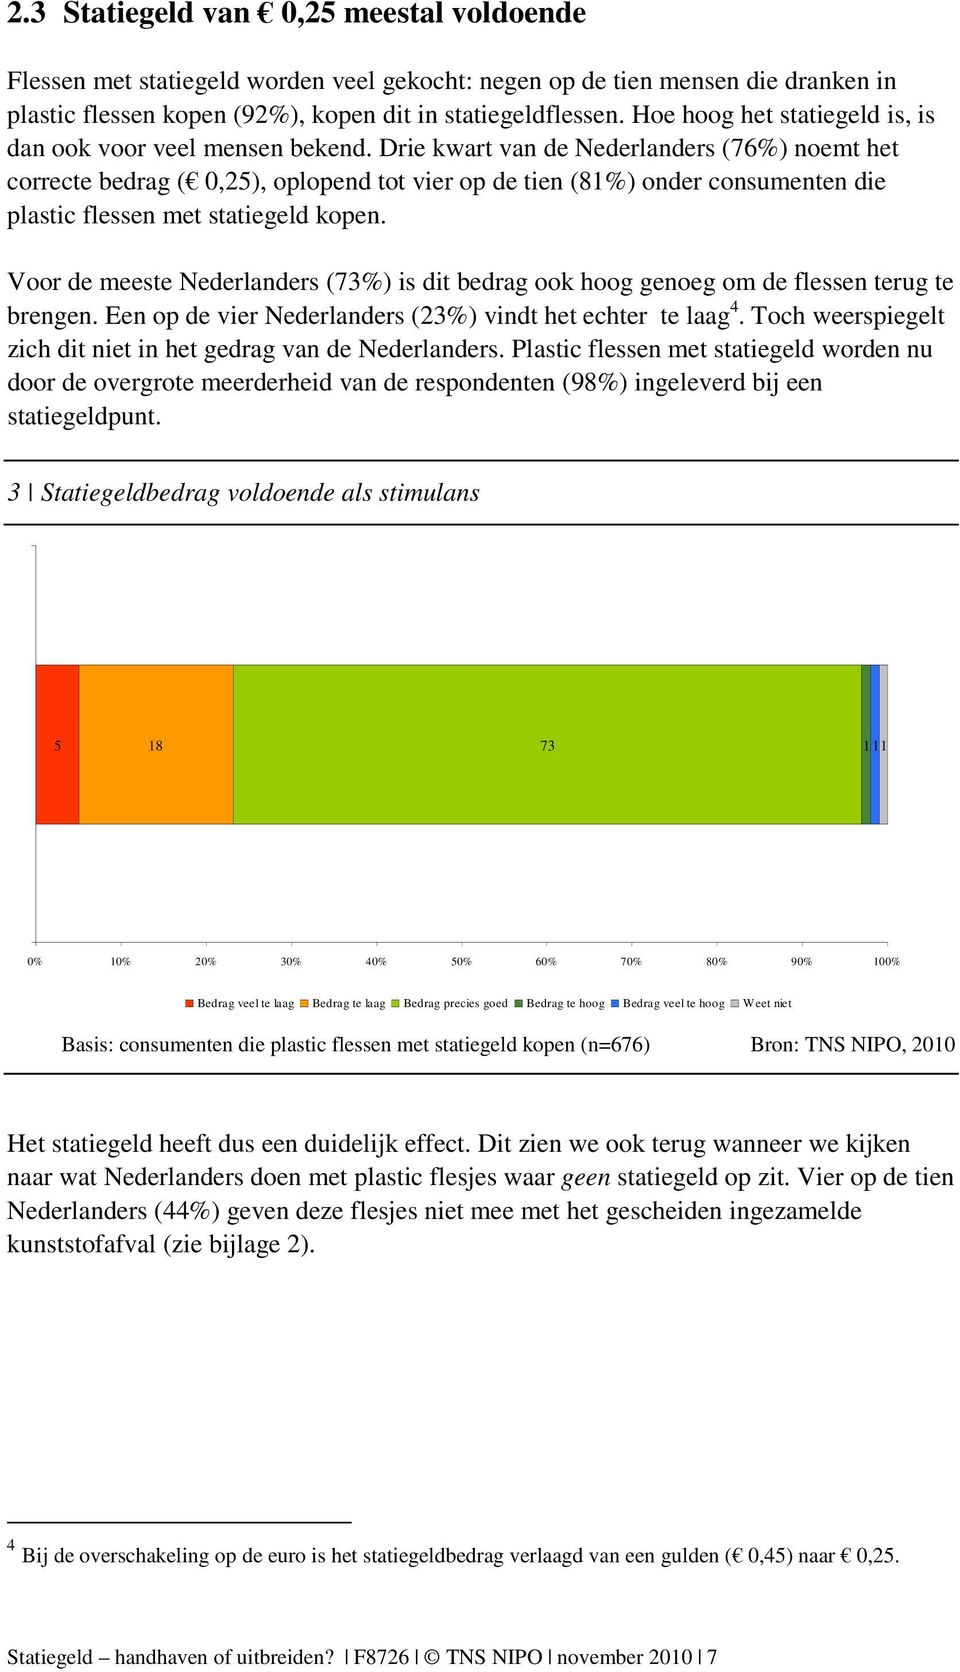 Drie kwart van de Nederlanders (76%) noemt het correcte bedrag ( 0,25), oplopend tot vier op de tien (81%) onder consumenten die plastic flessen met statiegeld kopen.